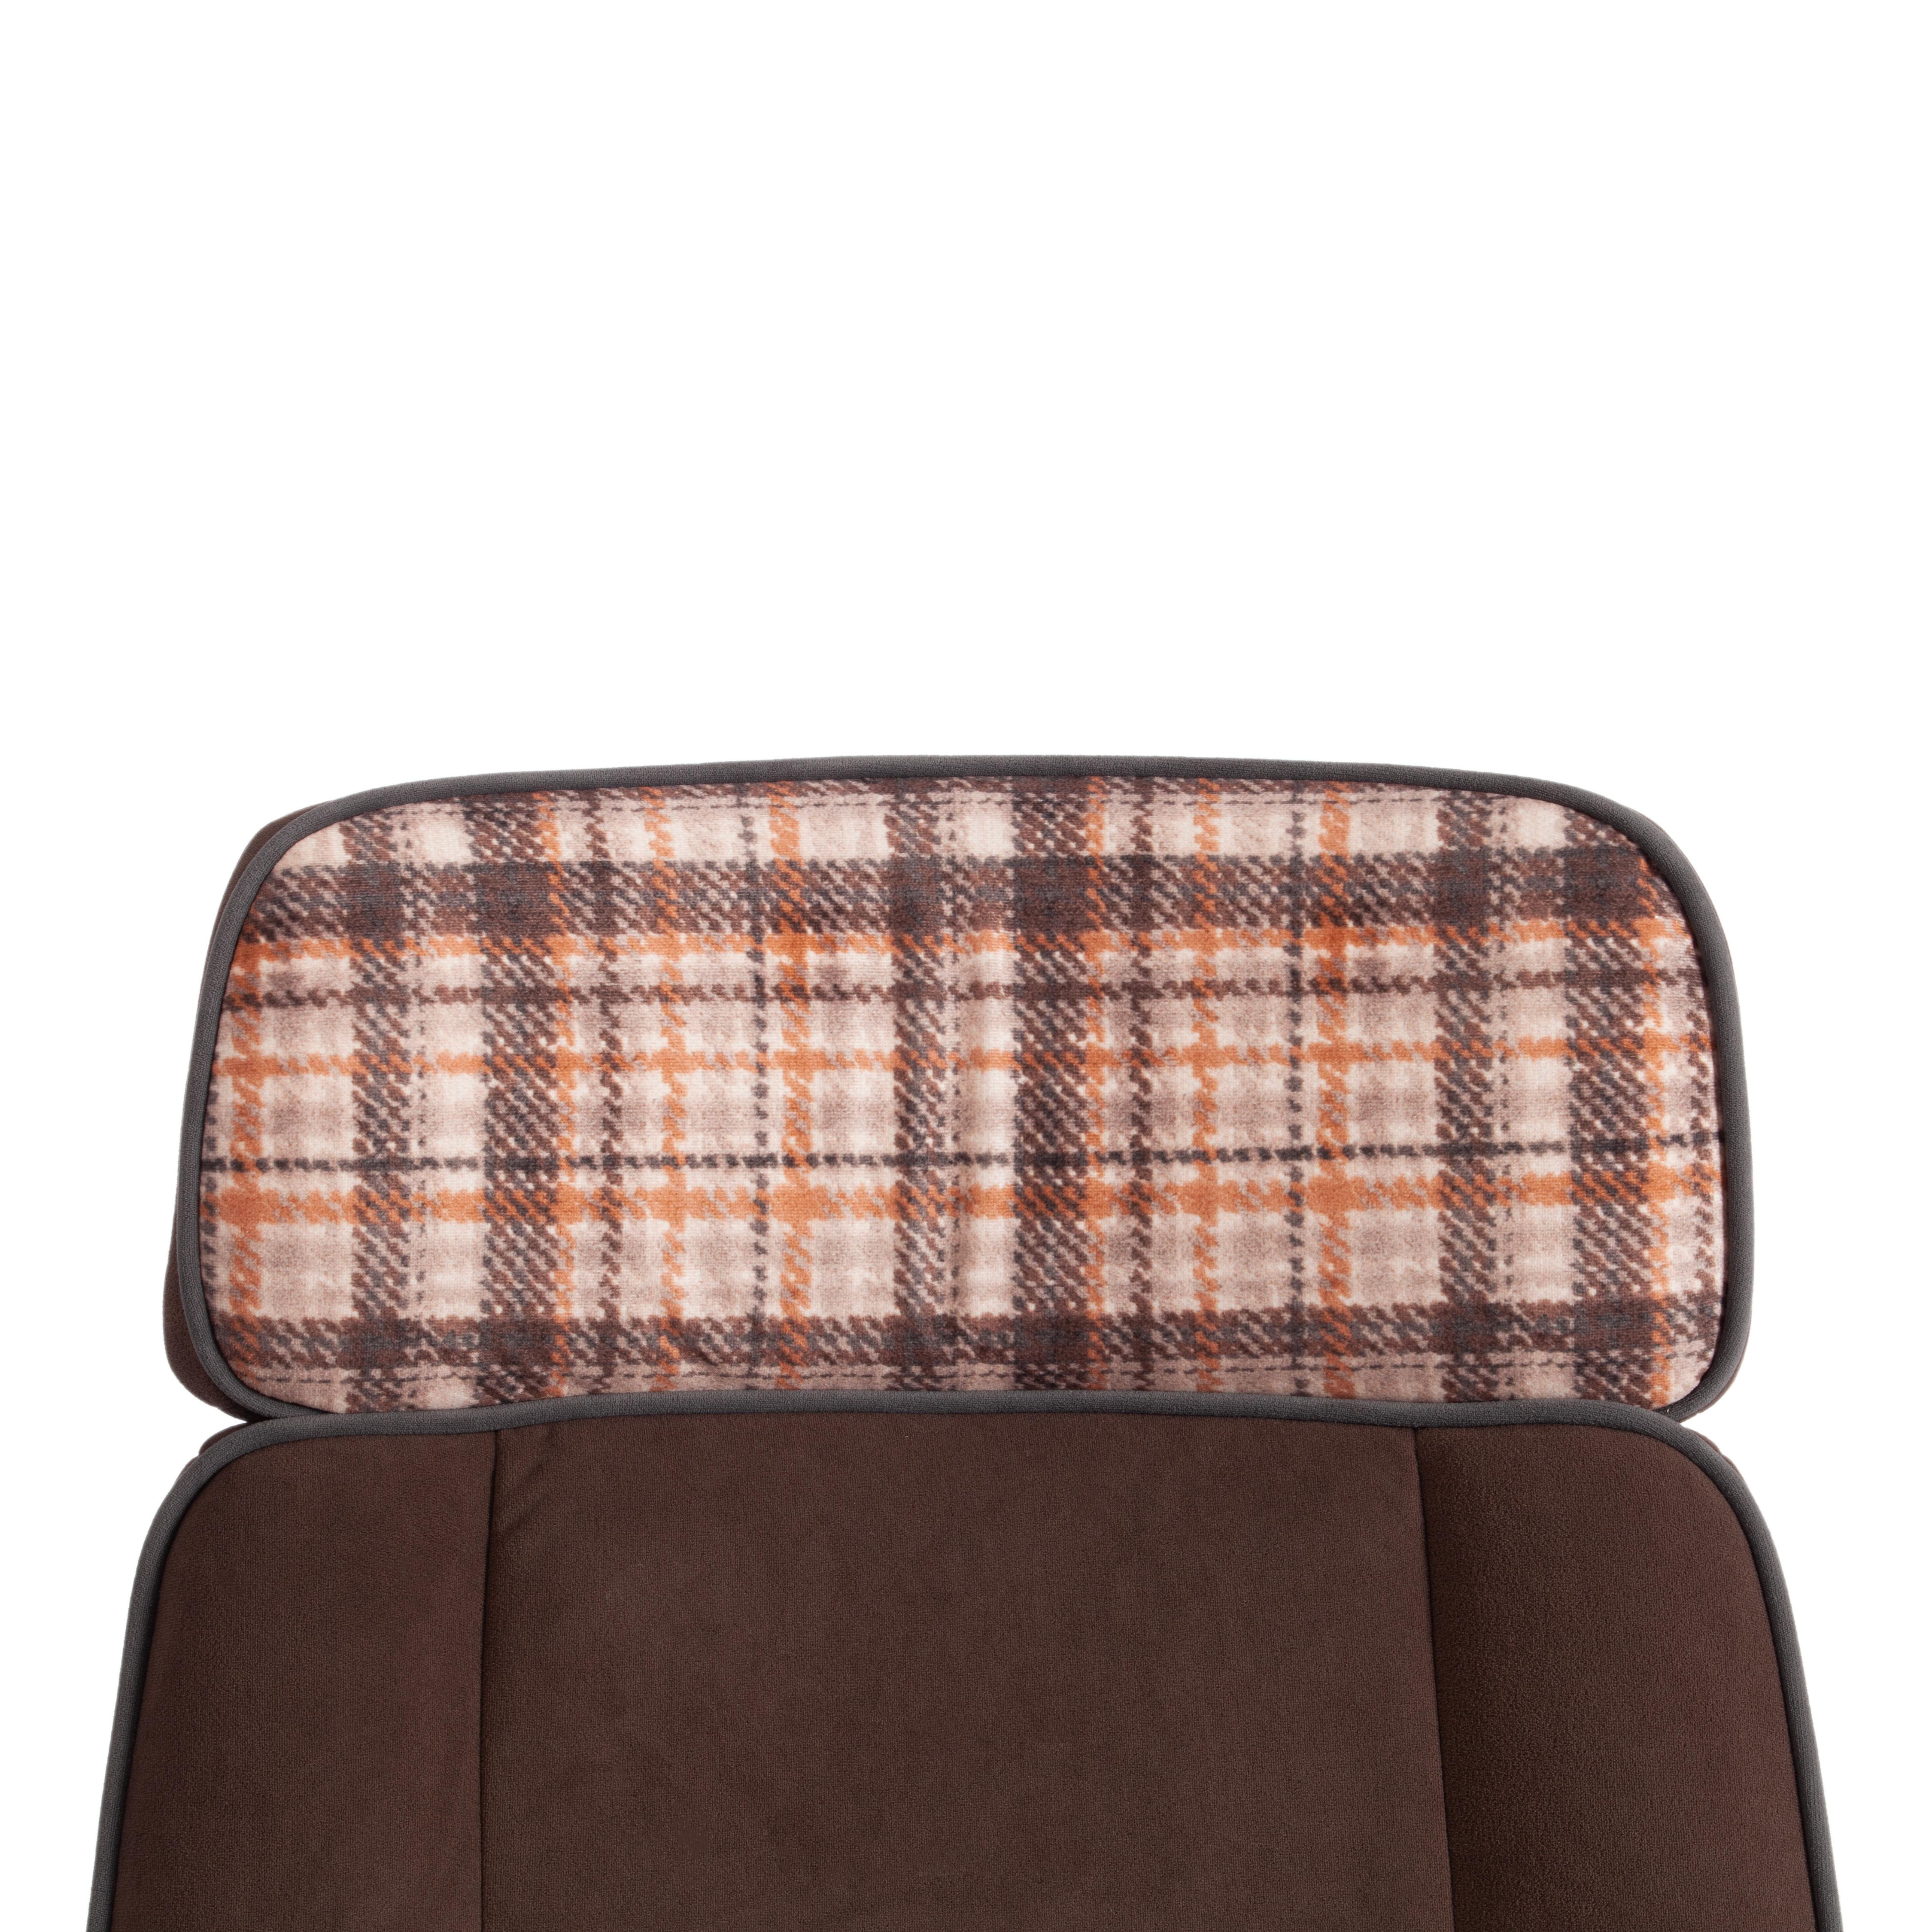 Кресло CHARM флок/ткань, коричневый/оранжевый, 06/bourbon 07